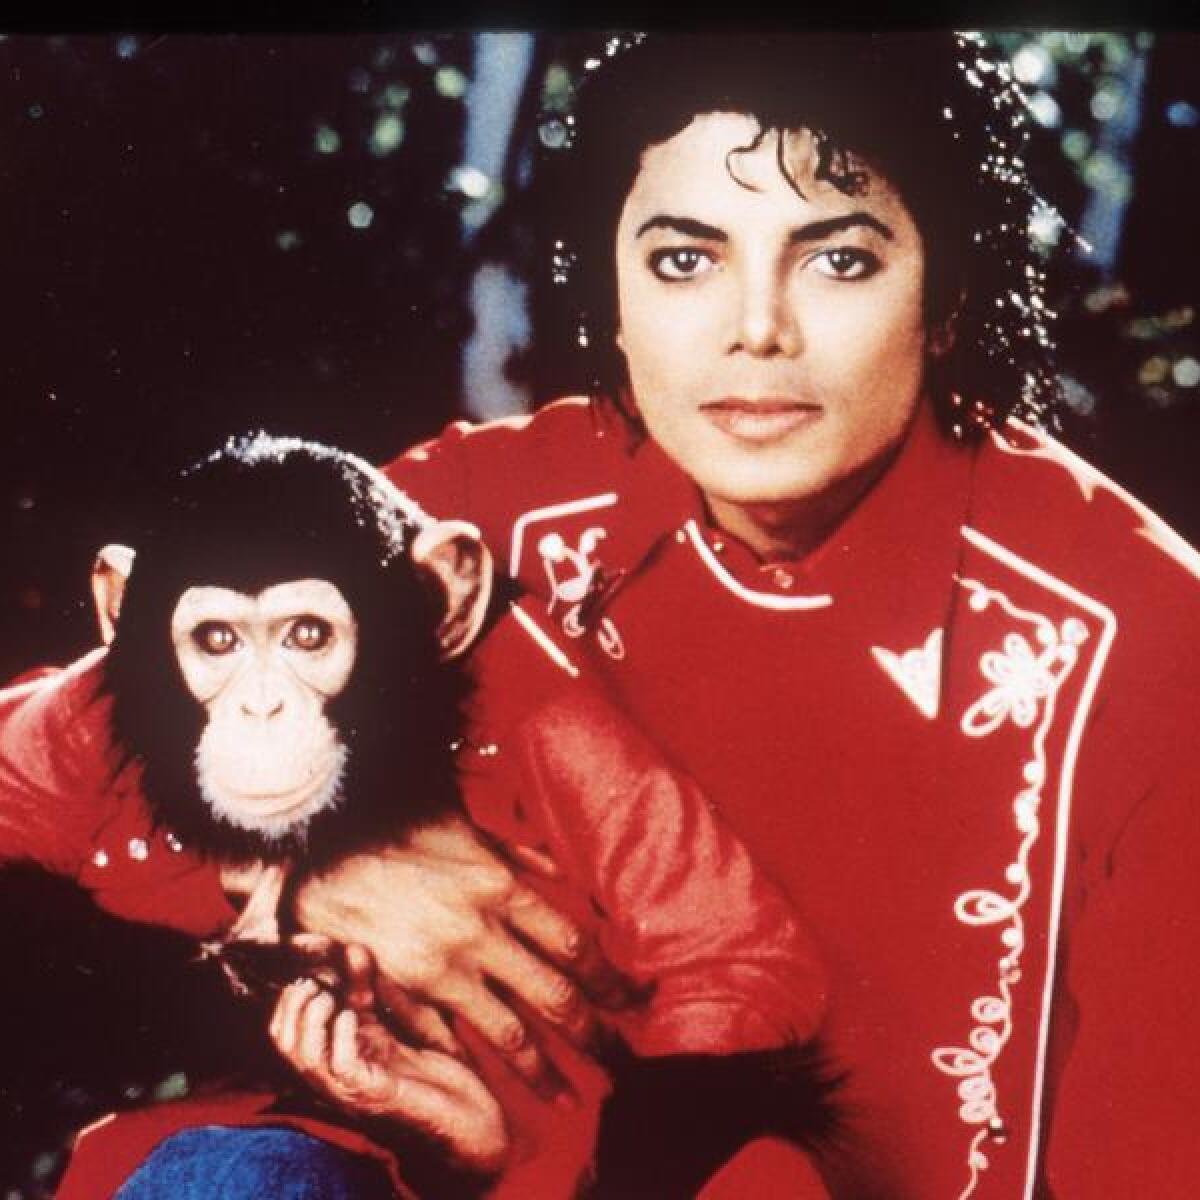 MJ's chimpanzee Bubbles 'living the good life'